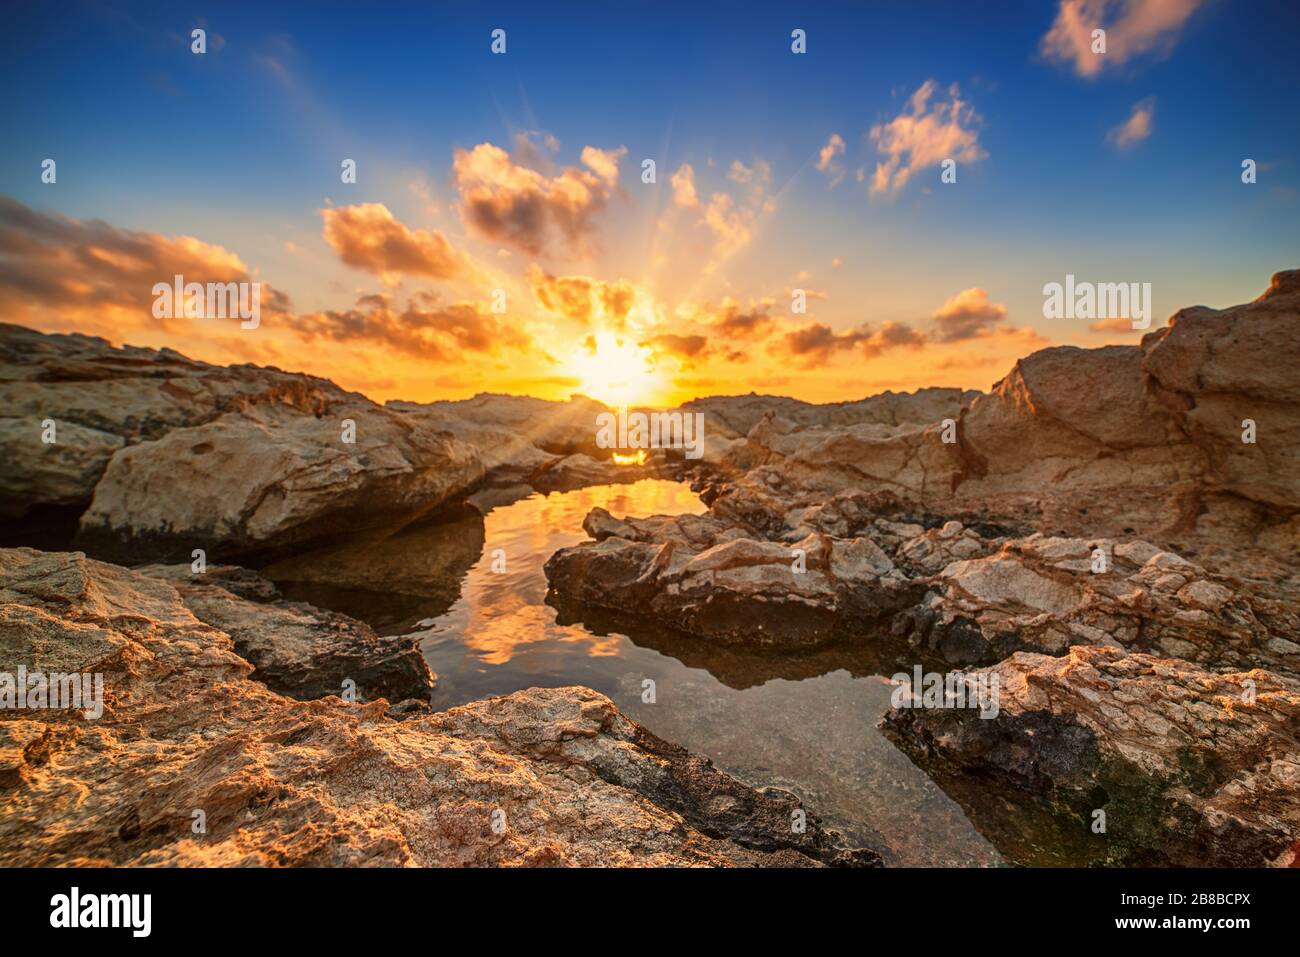 Schöner farbenfroher Sonnenuntergang am Meer auf Zypern mit dramatischen Wolken und Felsbrocken. Reflexionen im Wasser. Beauty-Welt Natur im Freien Reise-Hintergrund Stockfoto